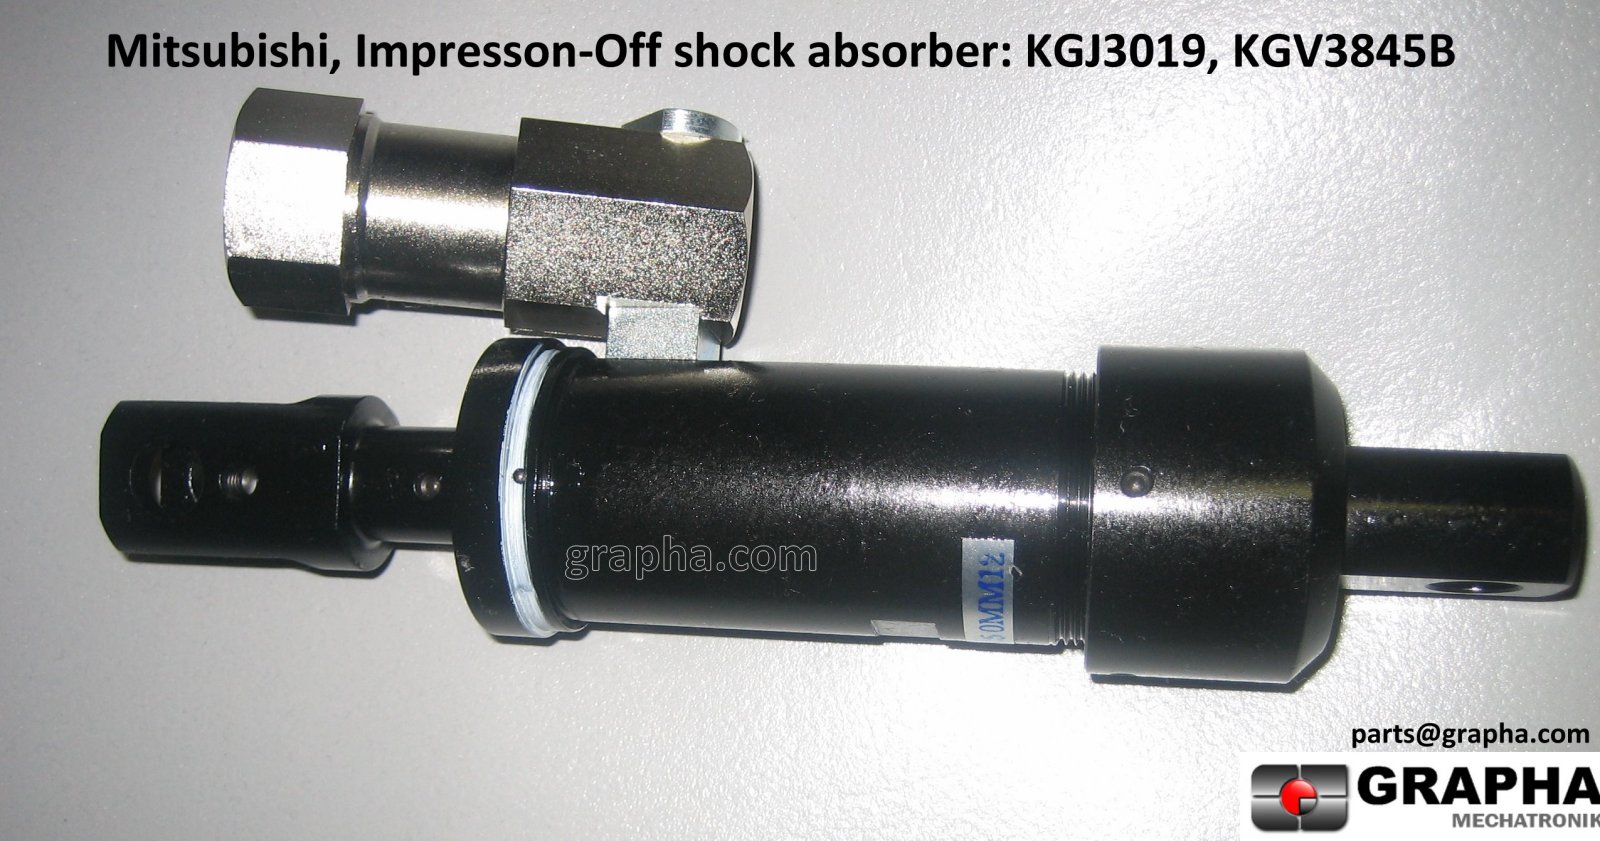 KGJ3019 Shock absorber grapha.jpg